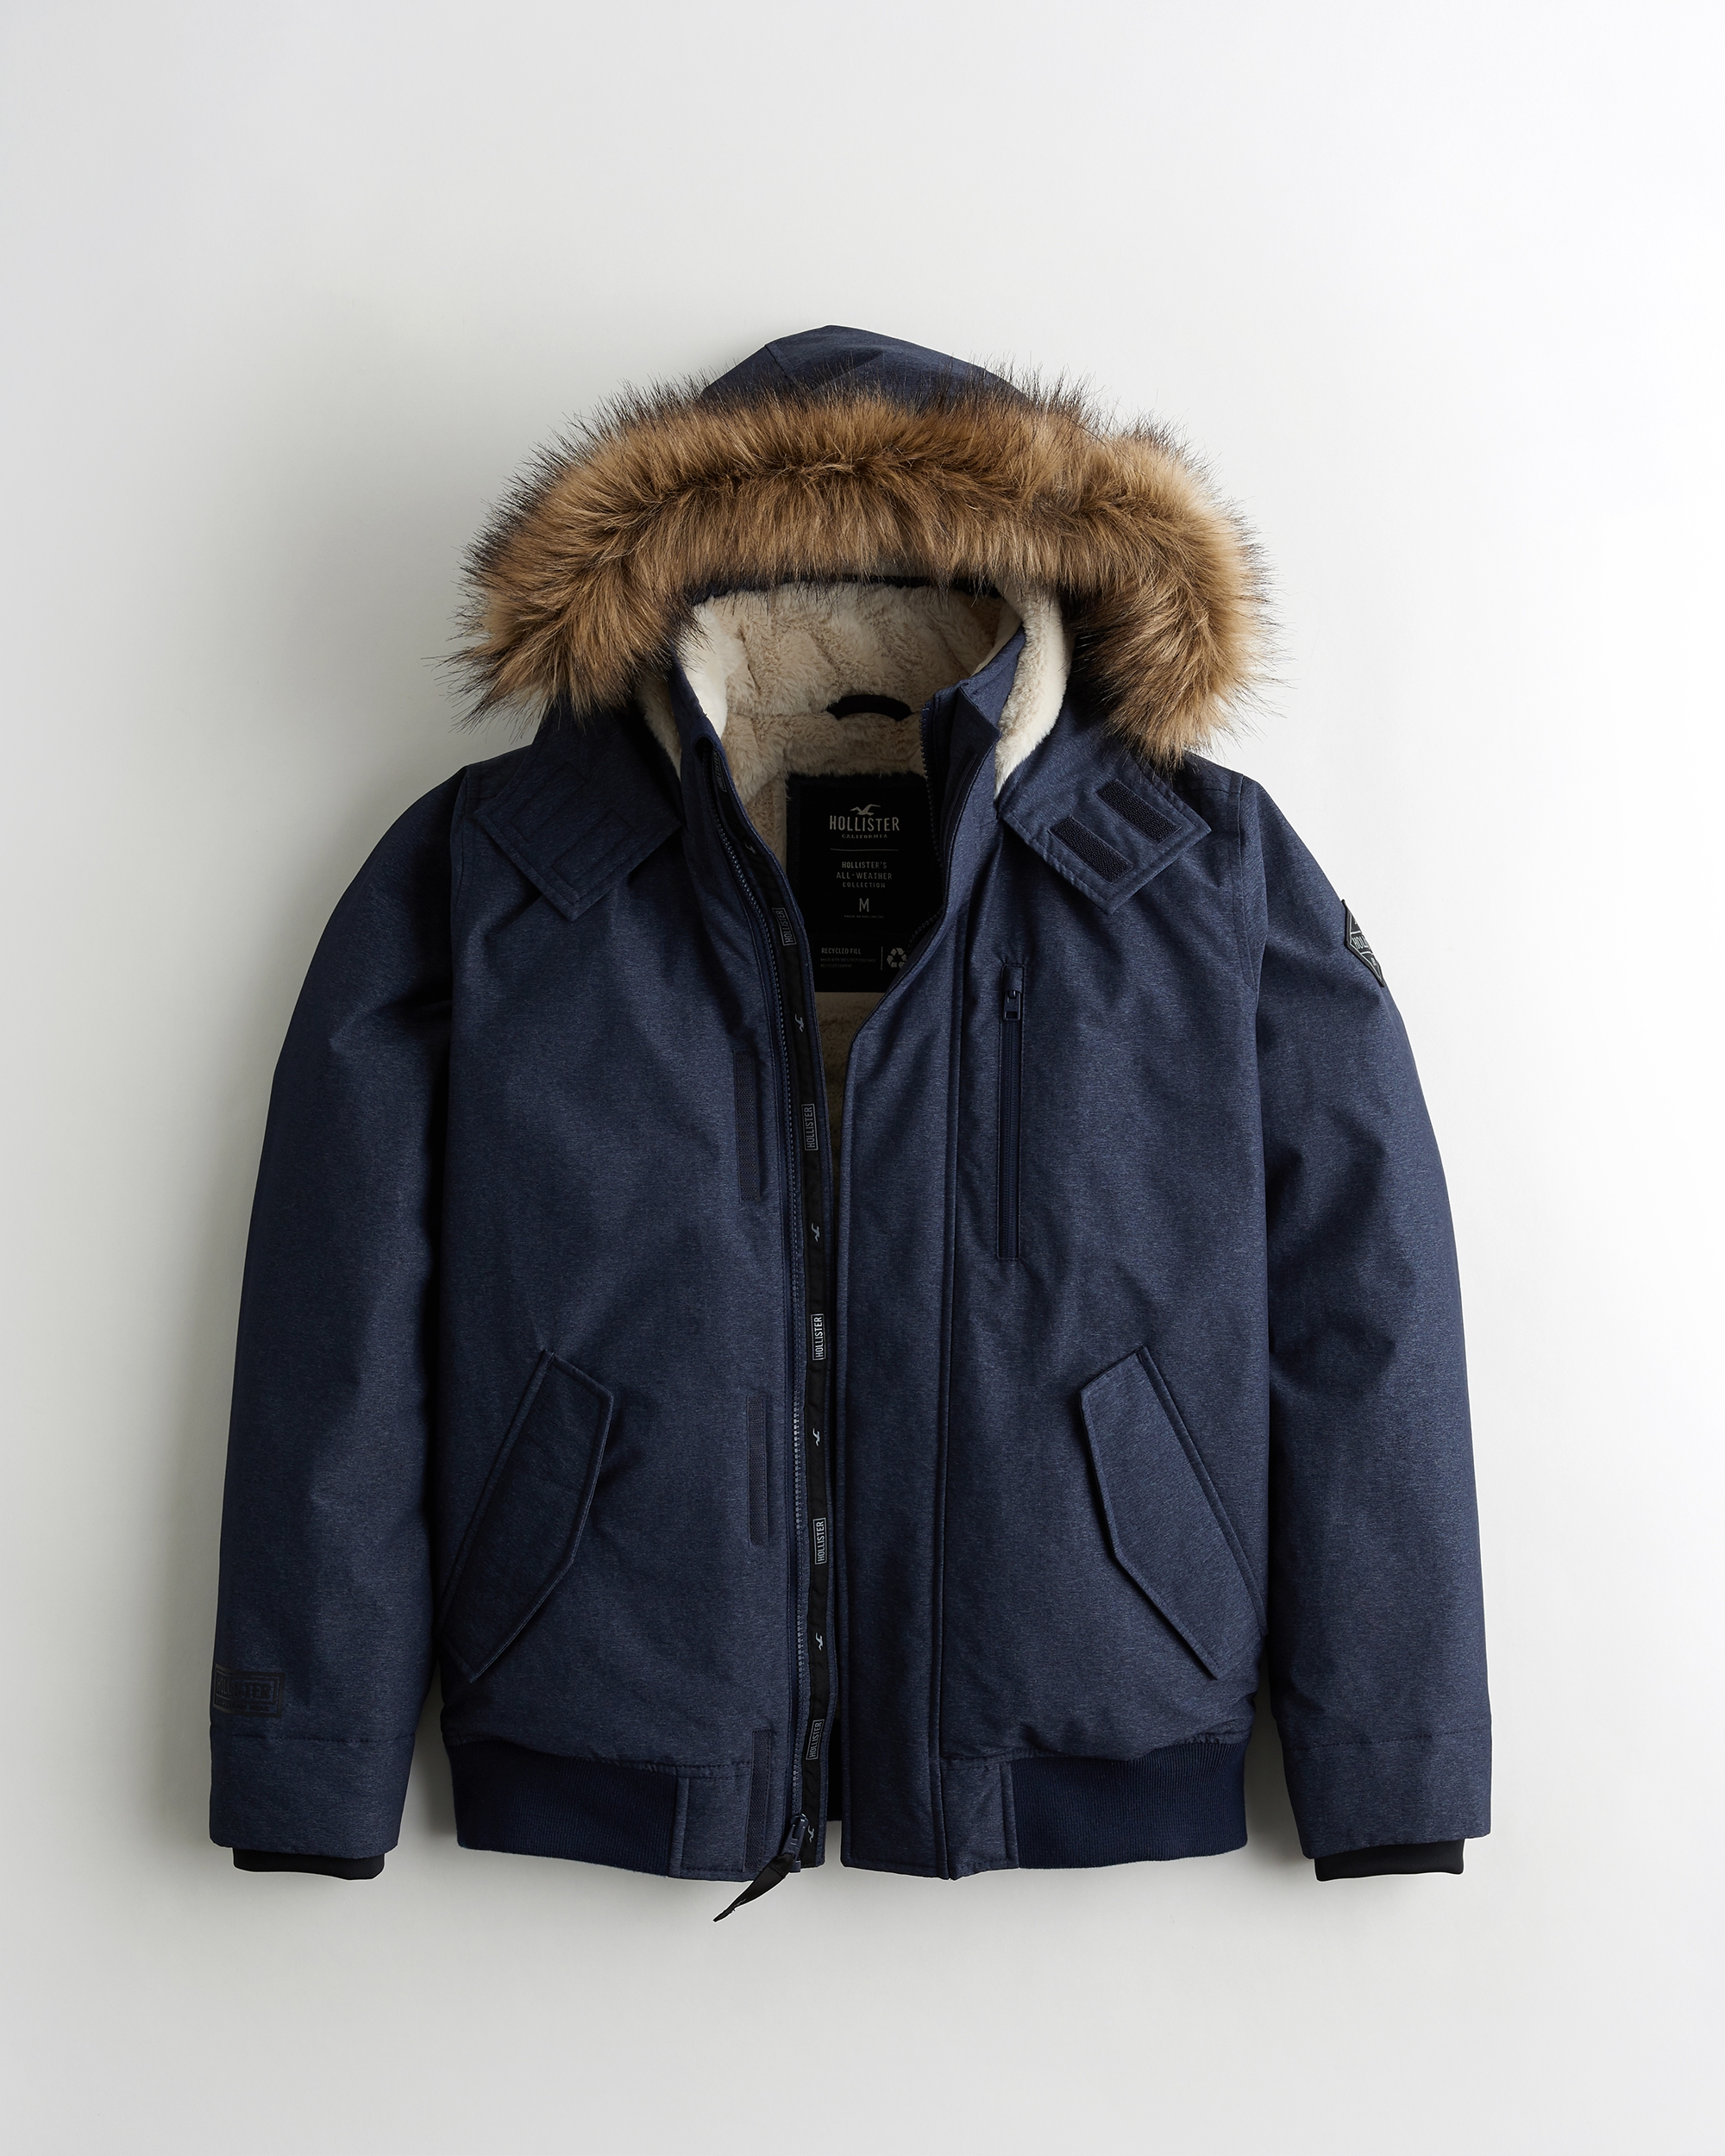 hollister jackets winter